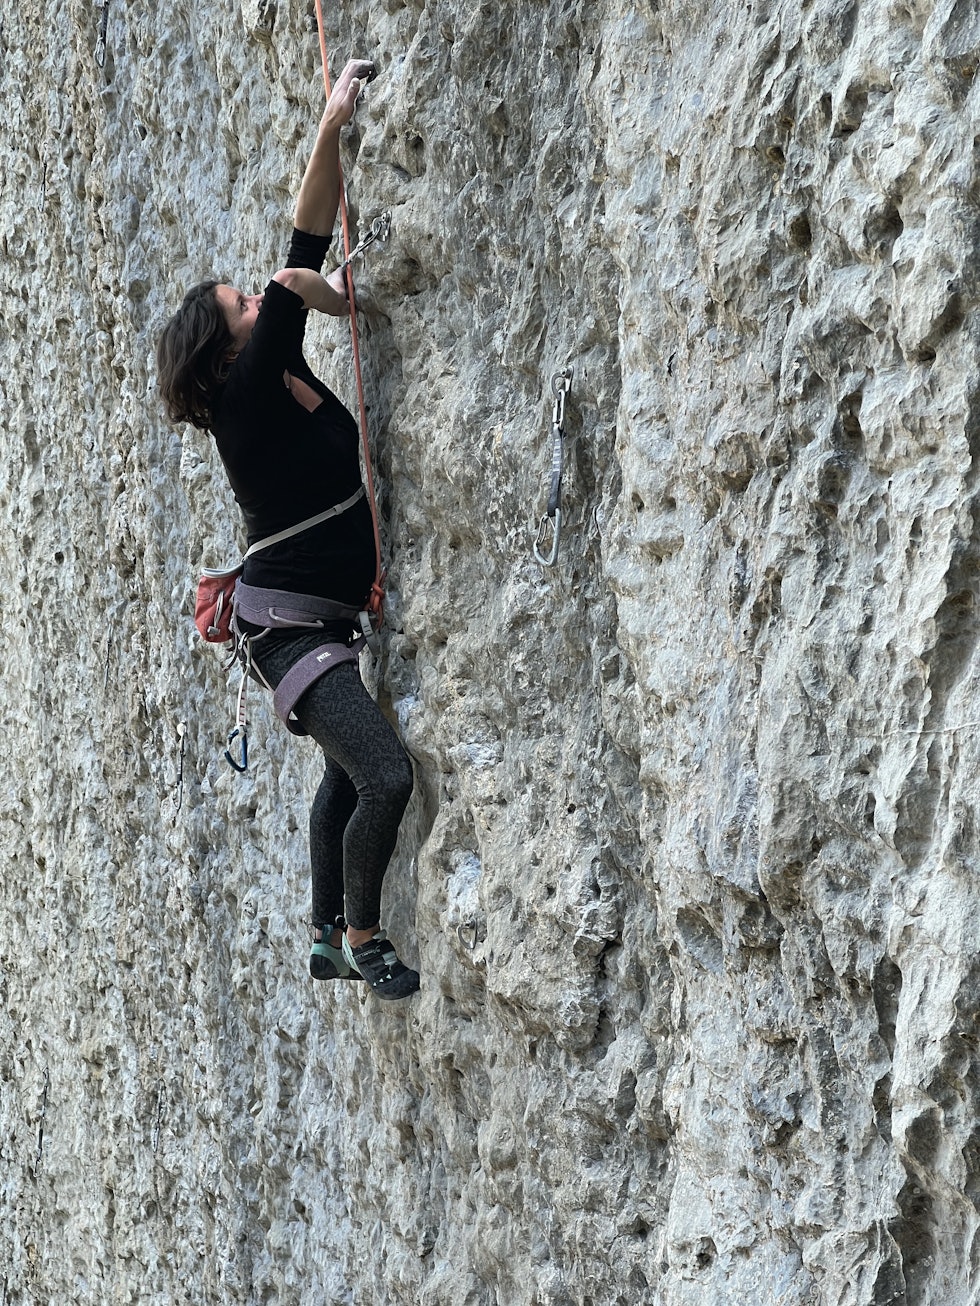 VORALPSEE, SVEITS: Nina klatret langt ut i graviditeten. Her er hun på en tur i Sveits med legenden Lynn Hill som har fiksa topptau til henne. Foto: Bryan Lipzig